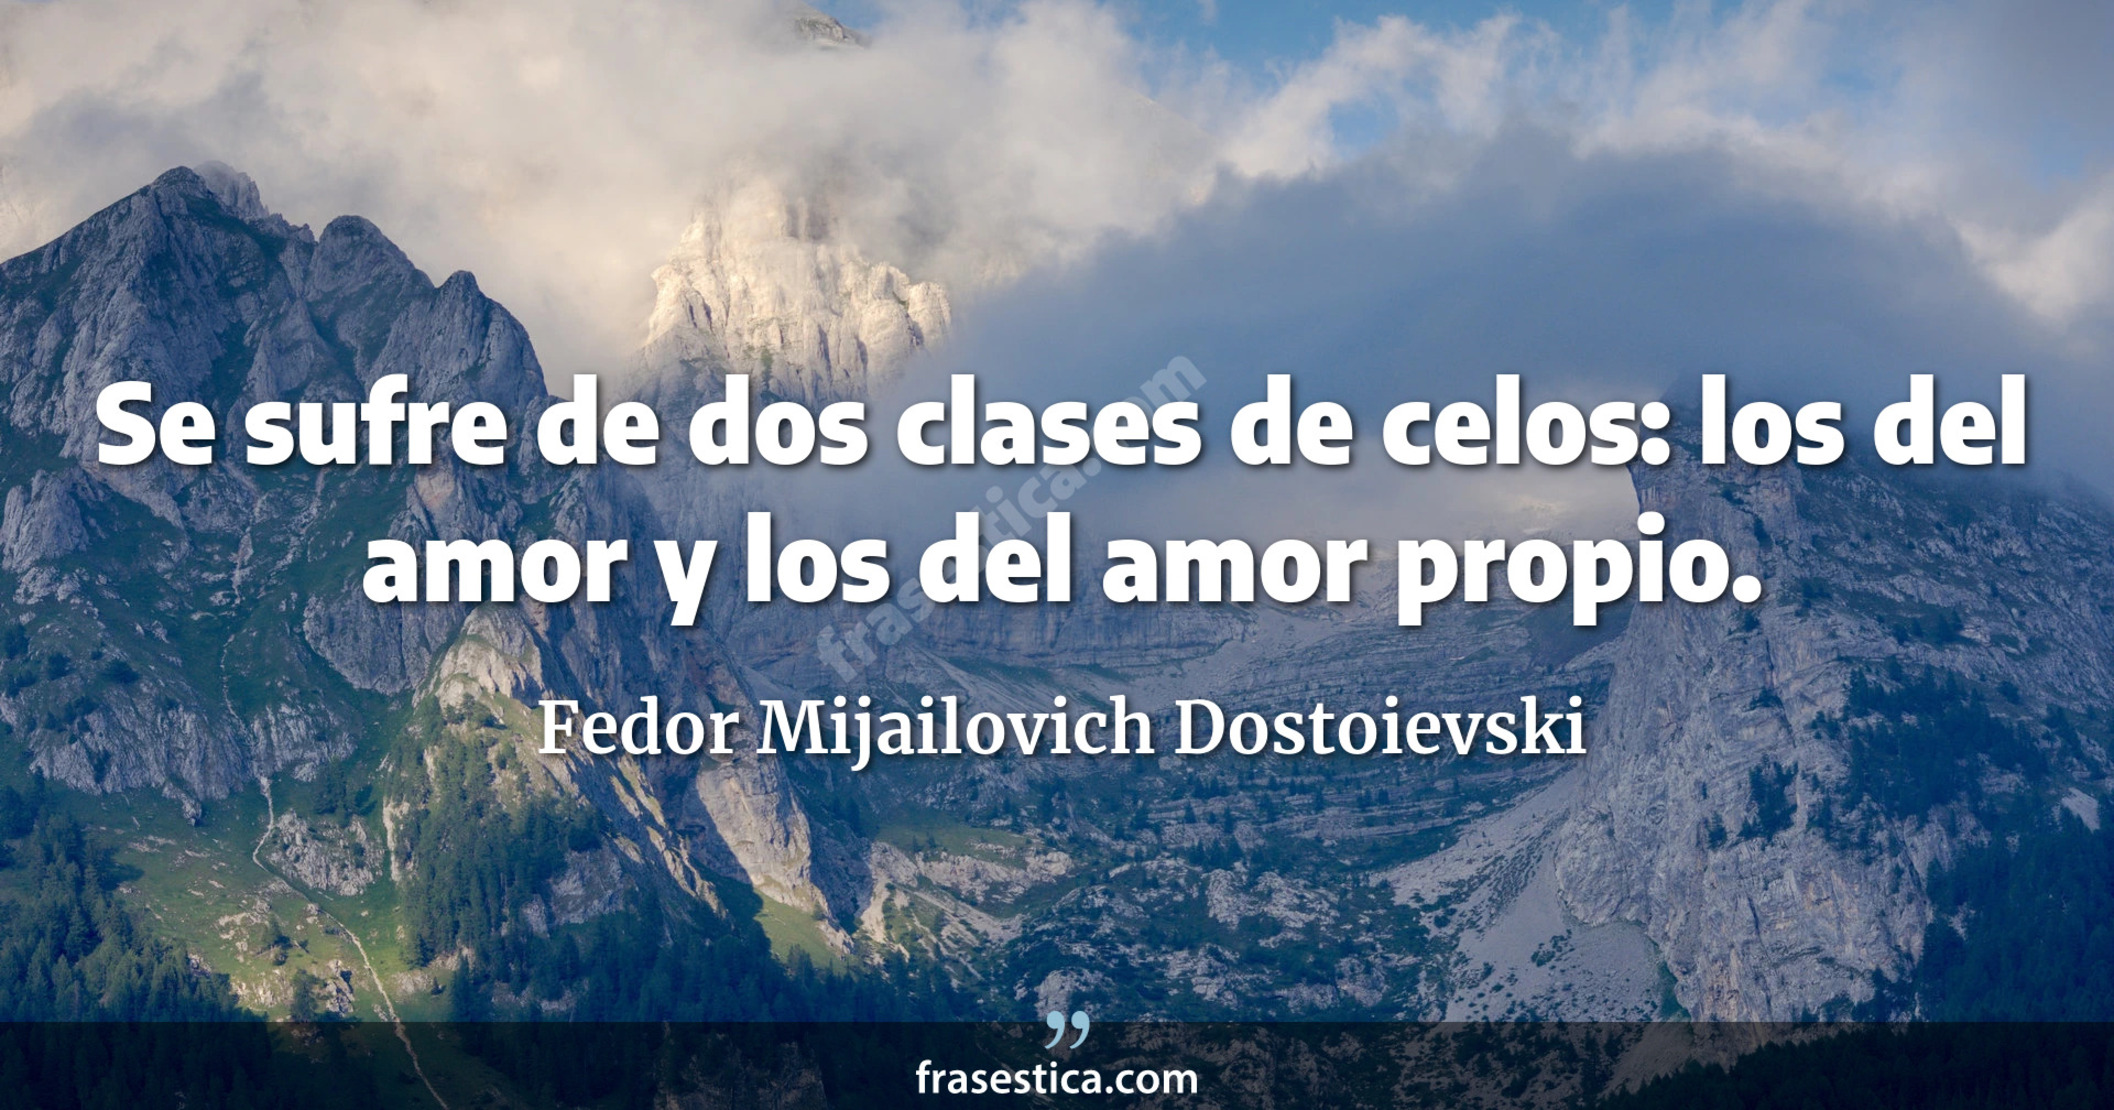 Se sufre de dos clases de celos: los del amor y los del amor propio. - Fedor Mijailovich Dostoievski